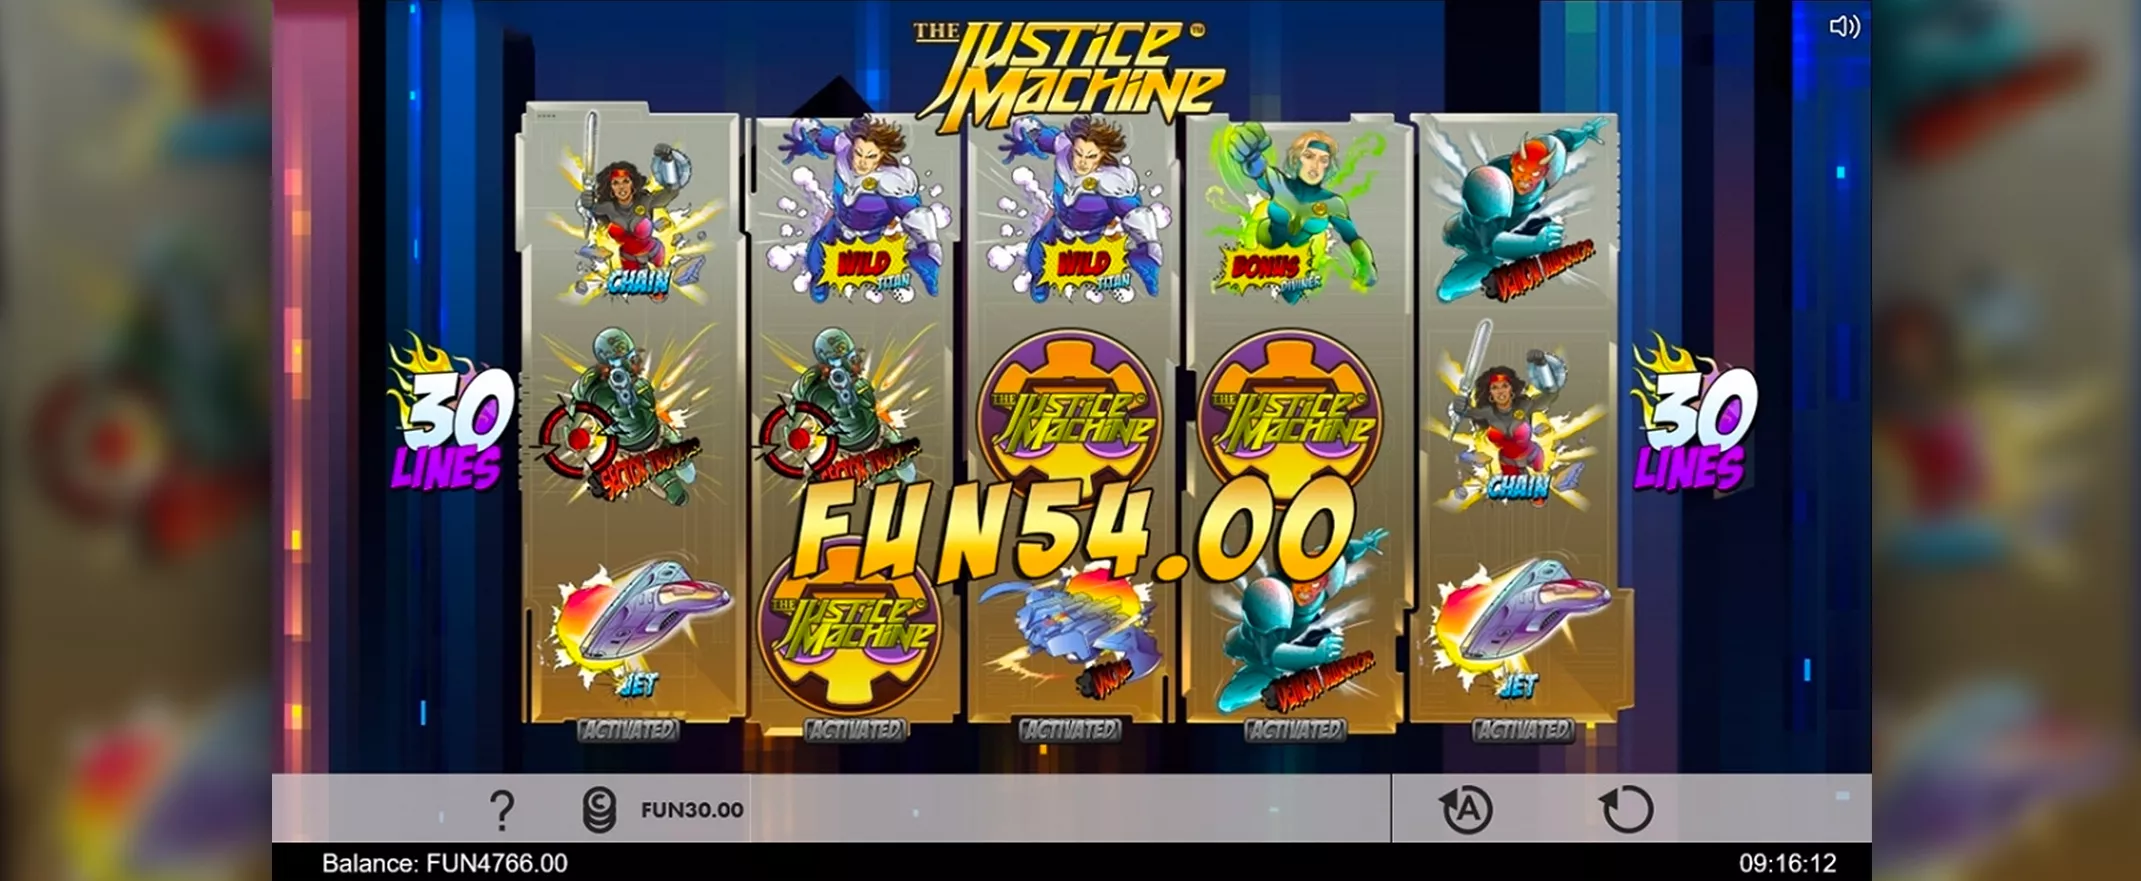 Justice Machine peliarvostelu, kuvankaappaus pelistä